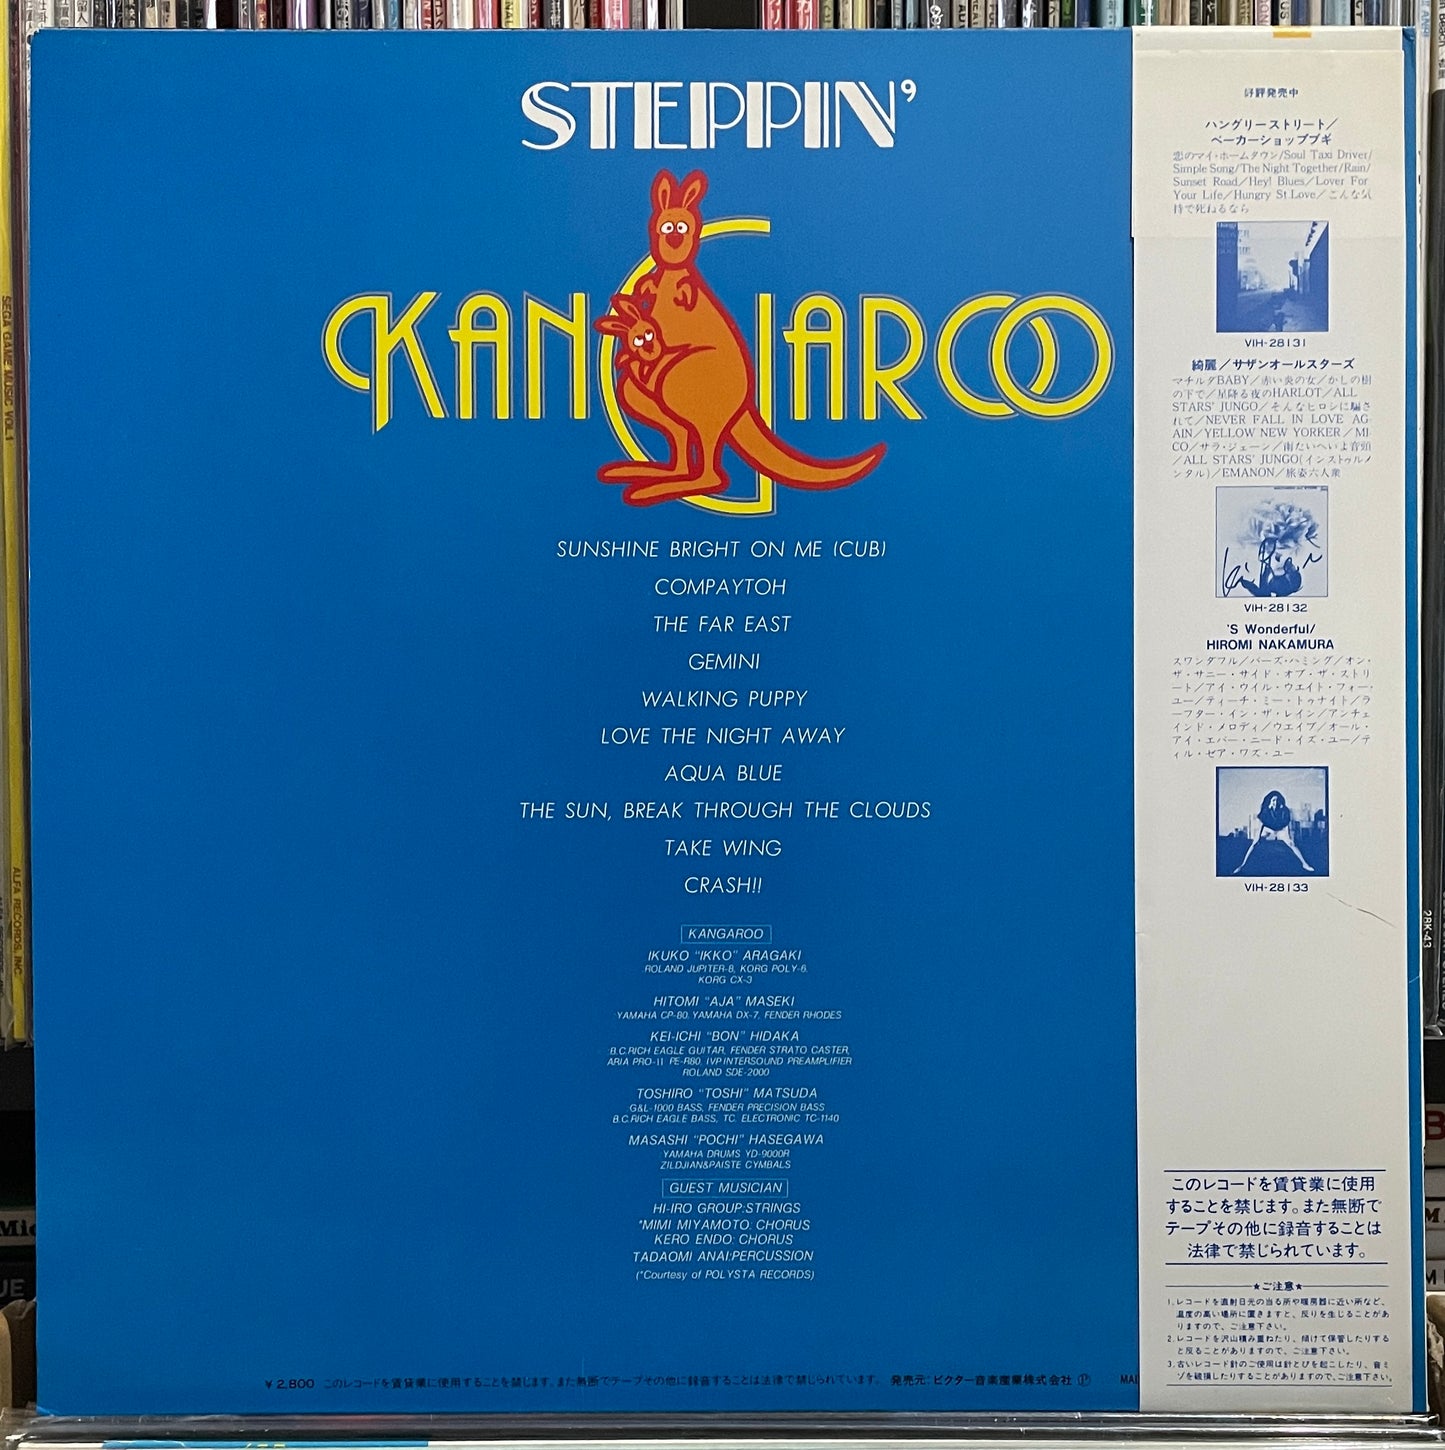 Kangaroo “Steppin’” (1983)